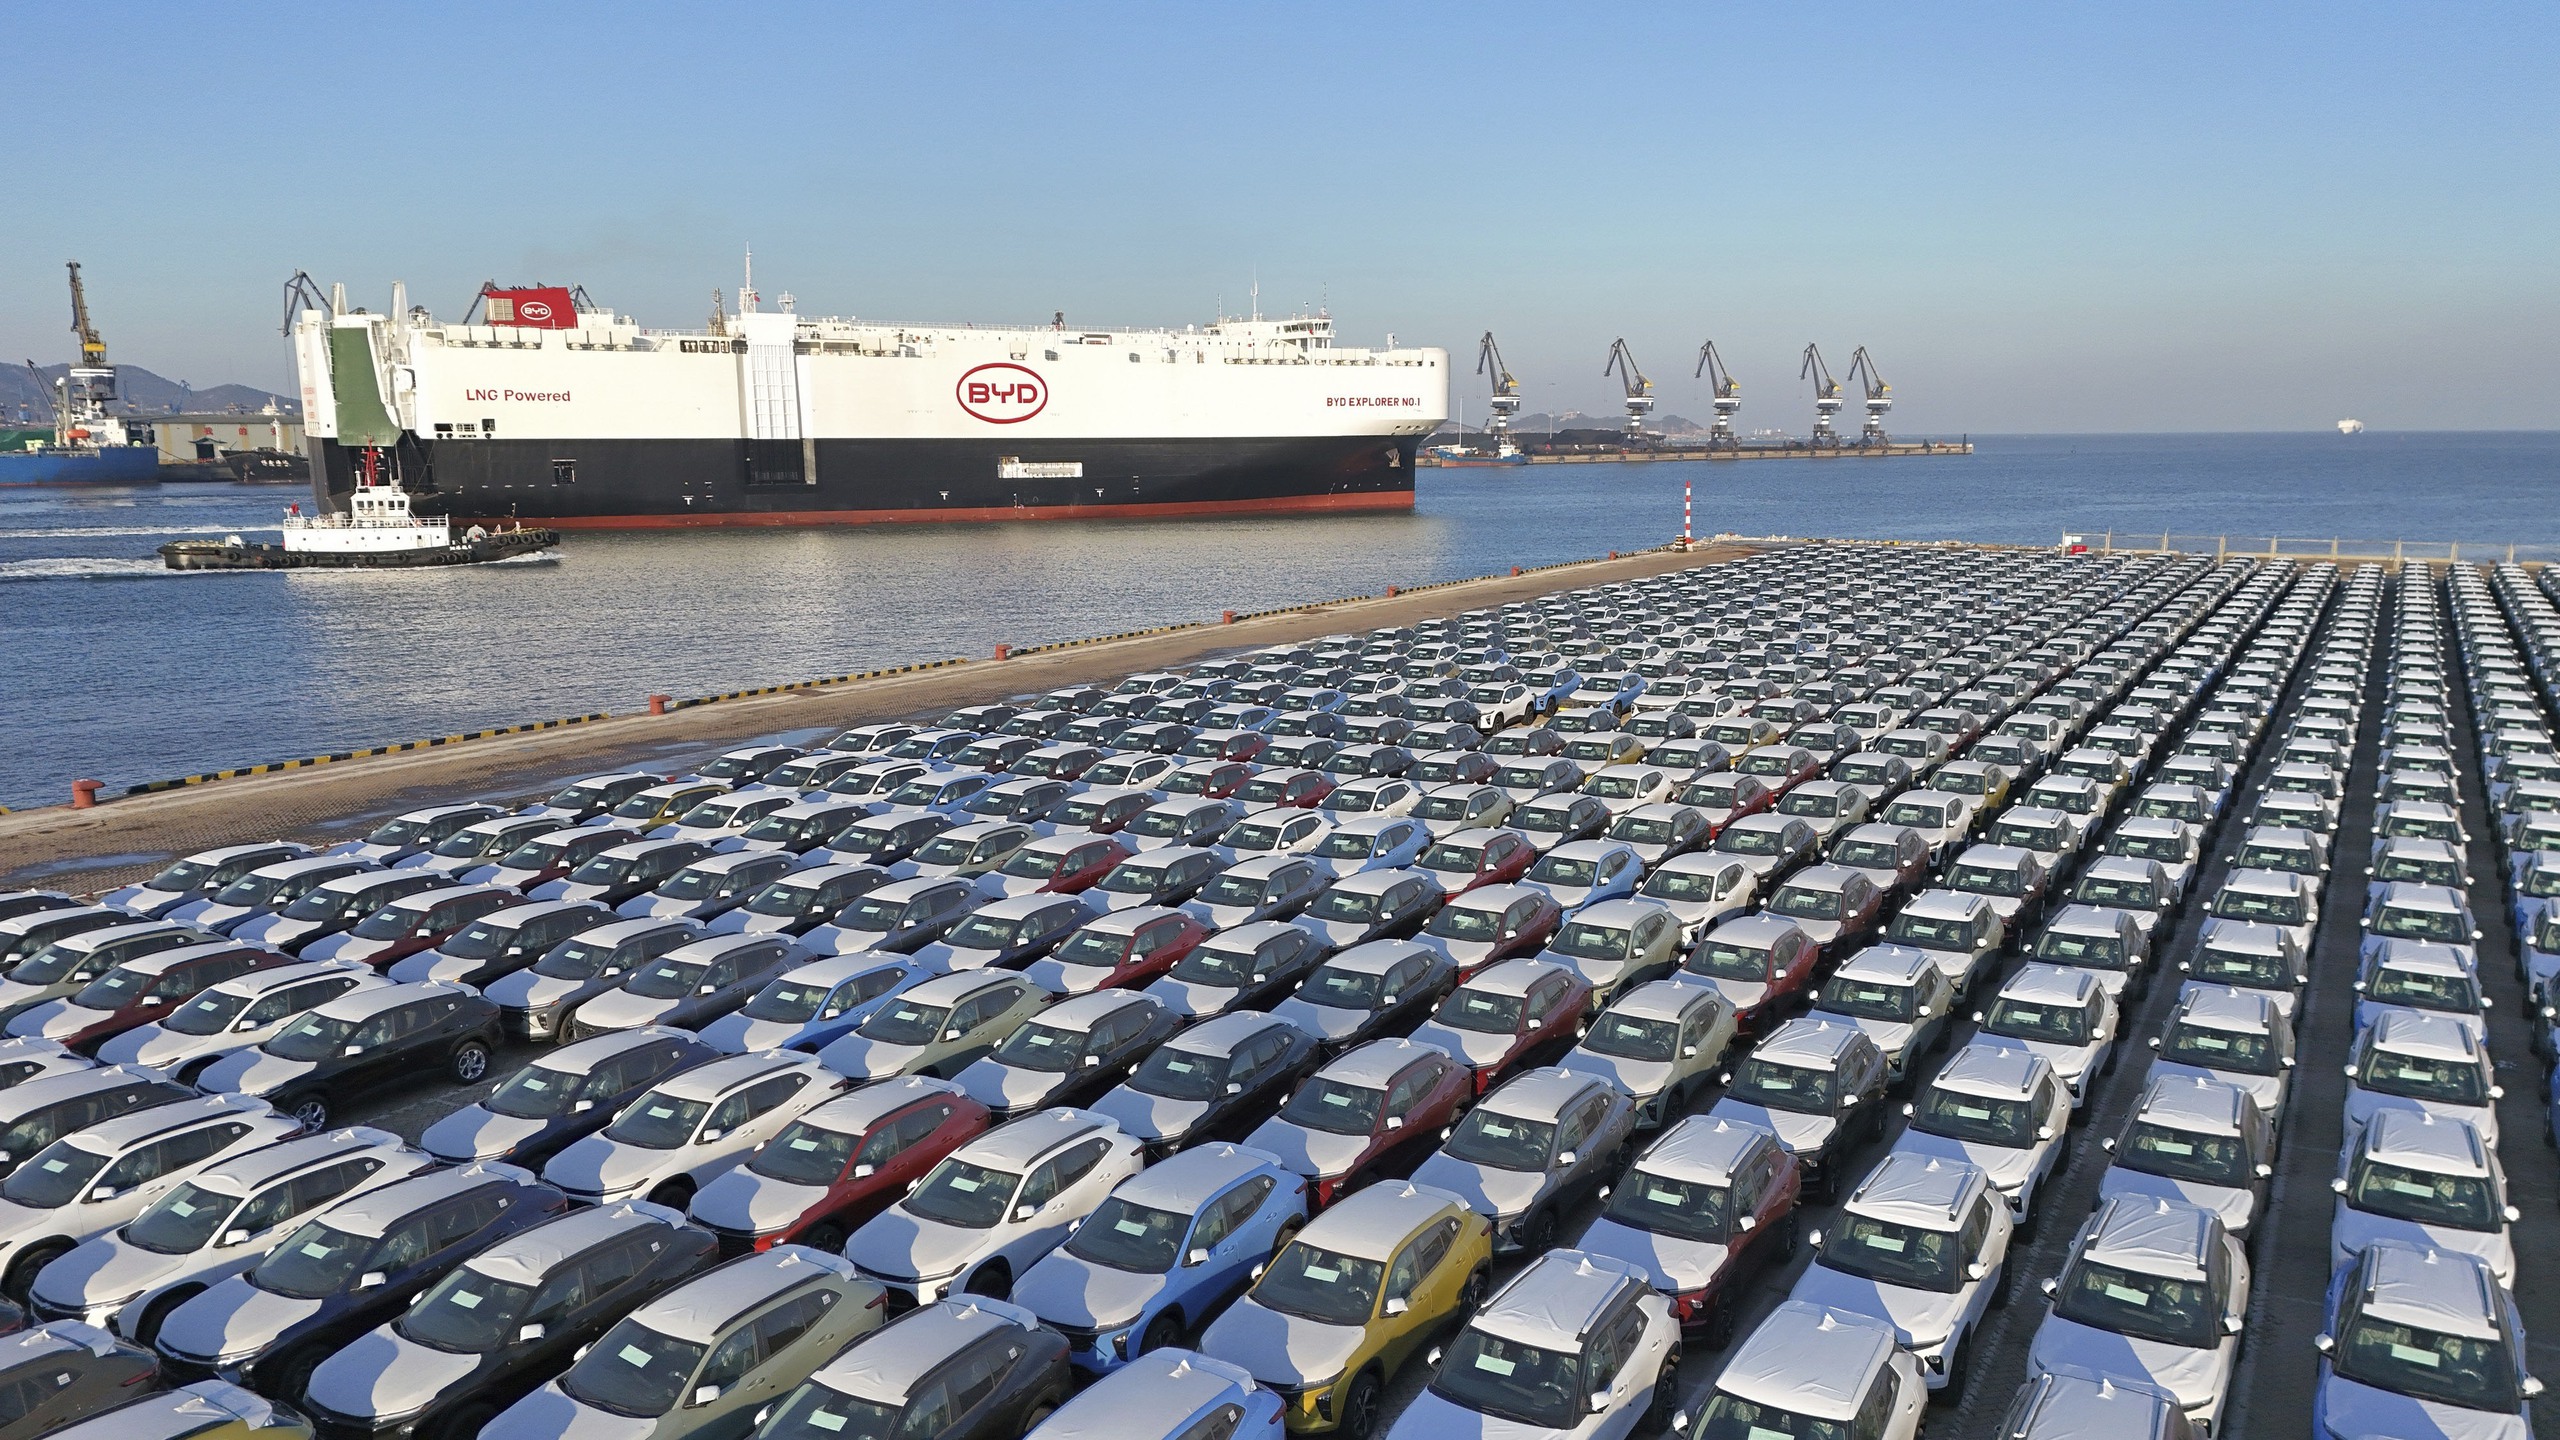 Chuyện gì đây: Cảng biển Châu Âu thành bãi đỗ xe điện của Trung Quốc, hỗn loạn với dòng lũ ô tô giá rẻ ùn tắc ngập các cửa khẩu - Ảnh 3.